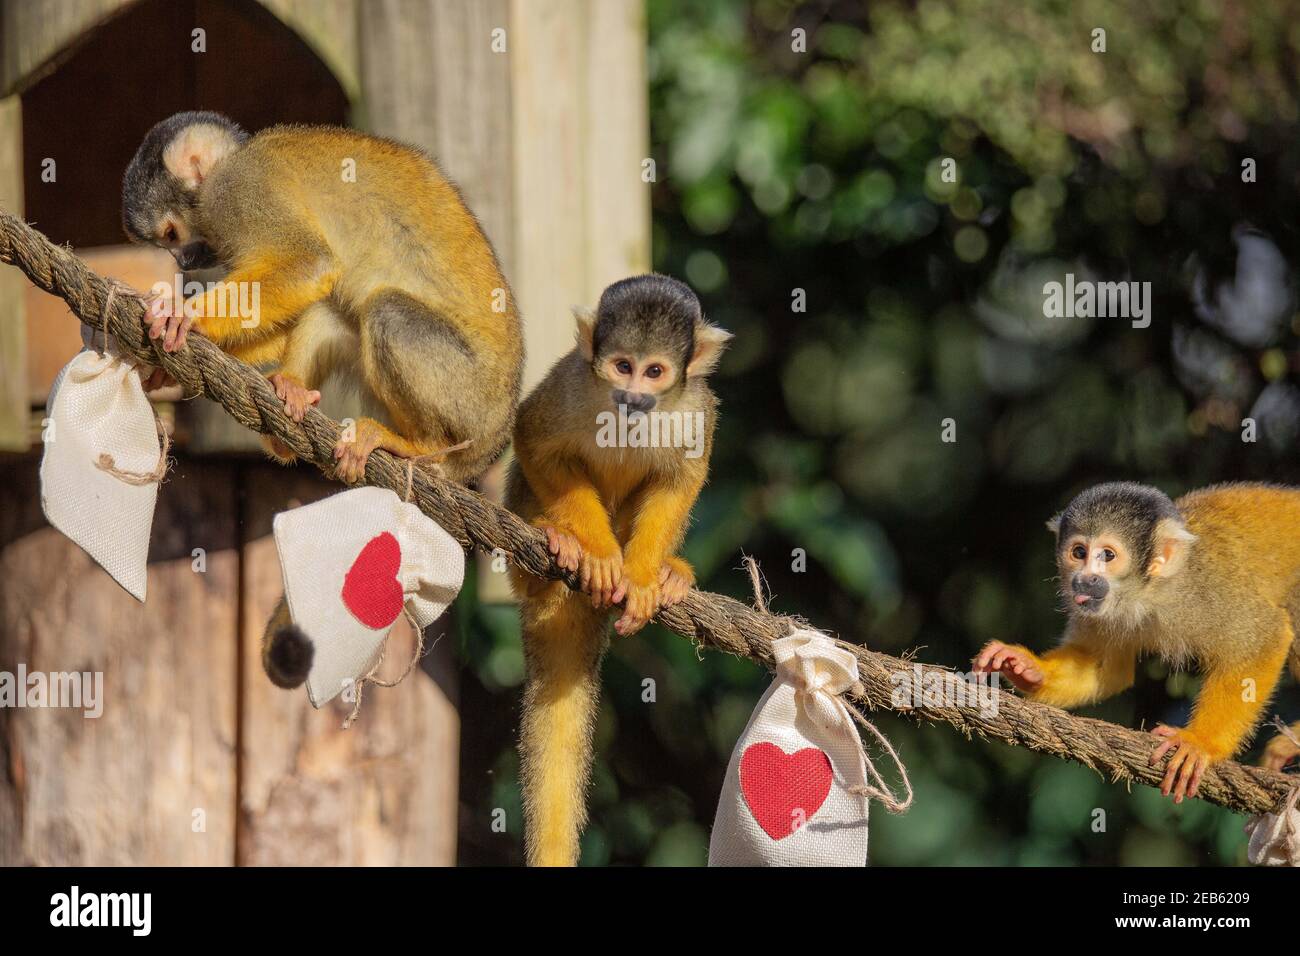 Ersparen Sie sich einen Gedanken für ZSL London Zoo 's bolivianischen schwarz gedeckelten Eichhörnchen Affen dieser Valentinstag . Der Zoo bleibt im Rahmen der landesweiten Sperrung für die Öffentlichkeit geschlossen, während Tierpfleger im Zoo bleiben, um sich um die Tiere zu kümmern.der Zoo bittet die Öffentlichkeit, etwas Liebe zu zeigen und zu spenden, um sich um die 18000 Tiere zu kümmern, da die Türen noch geschlossen sind Um die Regierung zu sperren, der Zoo fehlen auf lebenswichtige Einkommen. Engagierte Hüter sorgten dafür, dass es eine Tüte Leckereien für jedes Mitglied der schelmischen Gruppe gab, die zusammen in einem Spaziergang unter freiem Himmel durch den historischen Zoo leben. Stockfoto